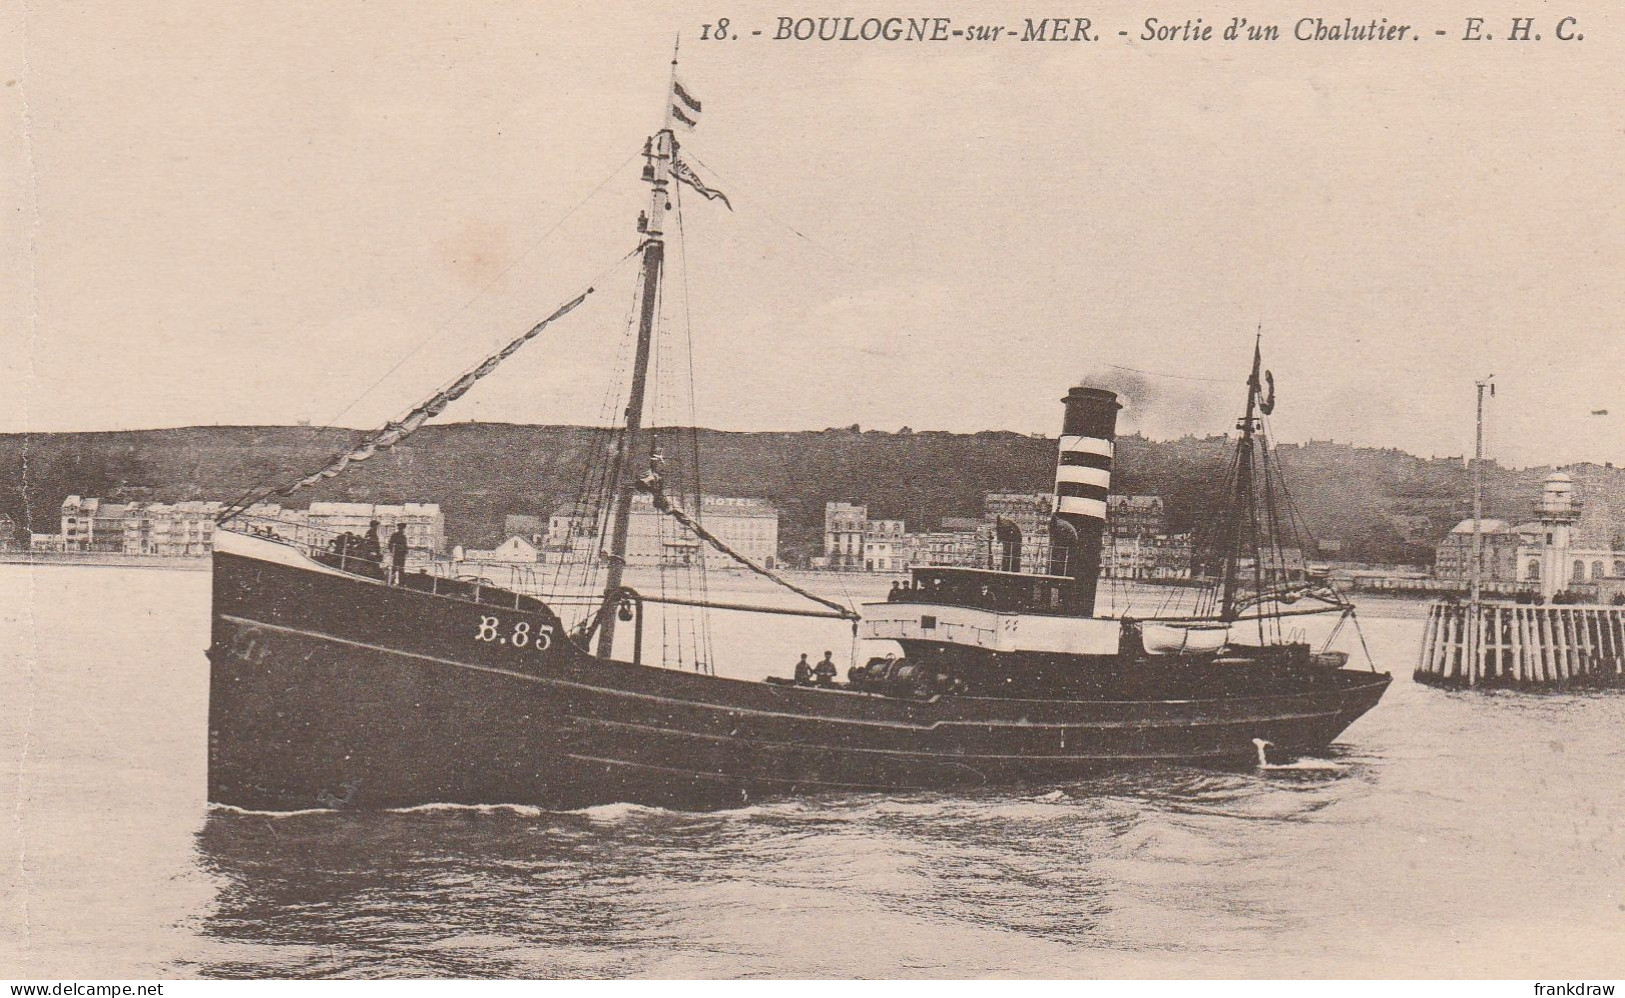 Postcard - Boulogne - Sur - Mer  - Sortie D'un Chalutier, E.H.C - Card No.18 - Very Good - Non Classés